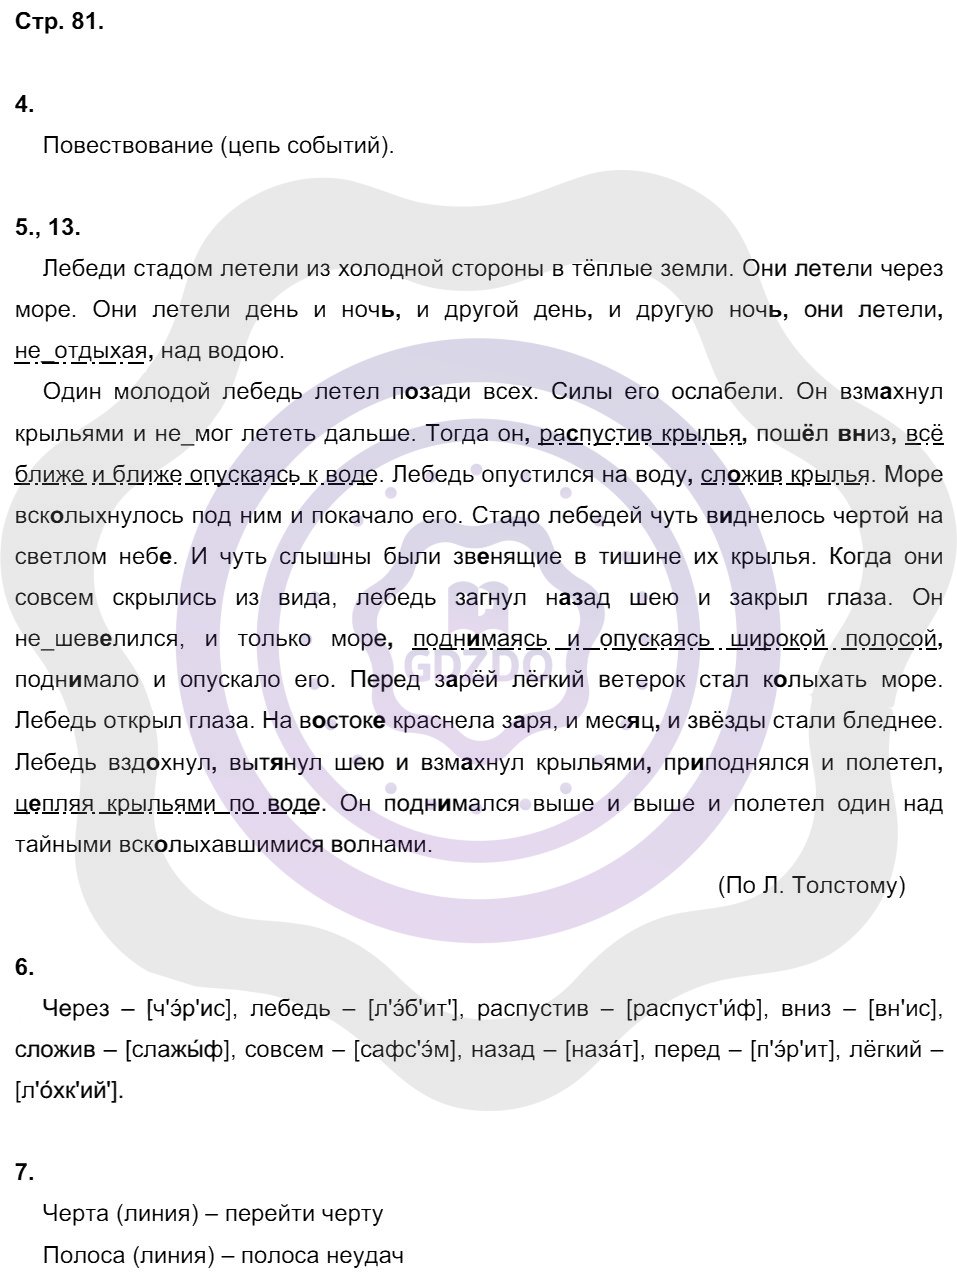 Ответы Русский язык 8 класс Малюшкин А. Б. Страницы 81